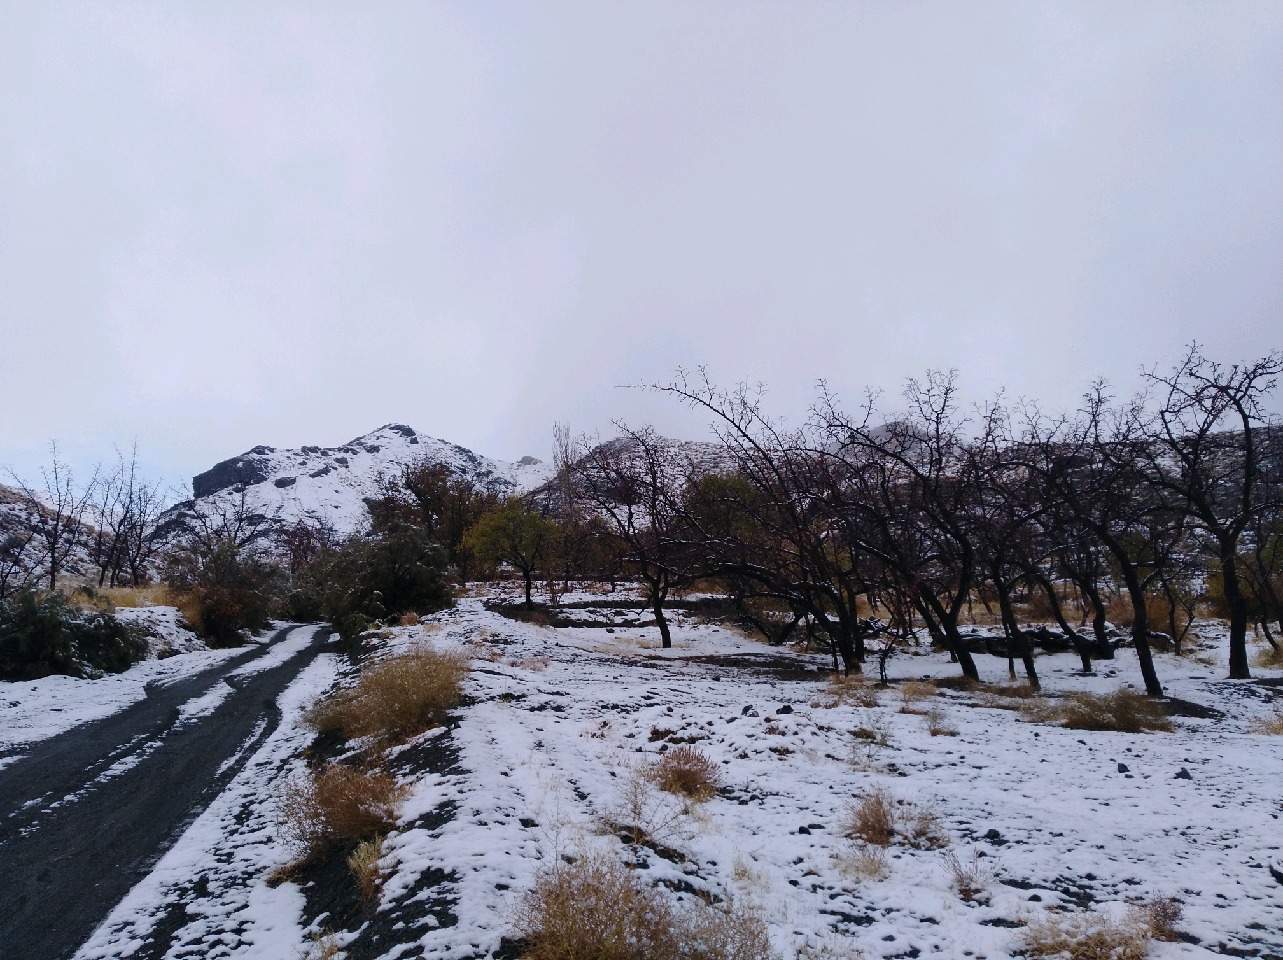 طبیعت زیبای برفی ارتفاعات بیرجند عکس موبایلی ابوالفضل حسن پور 